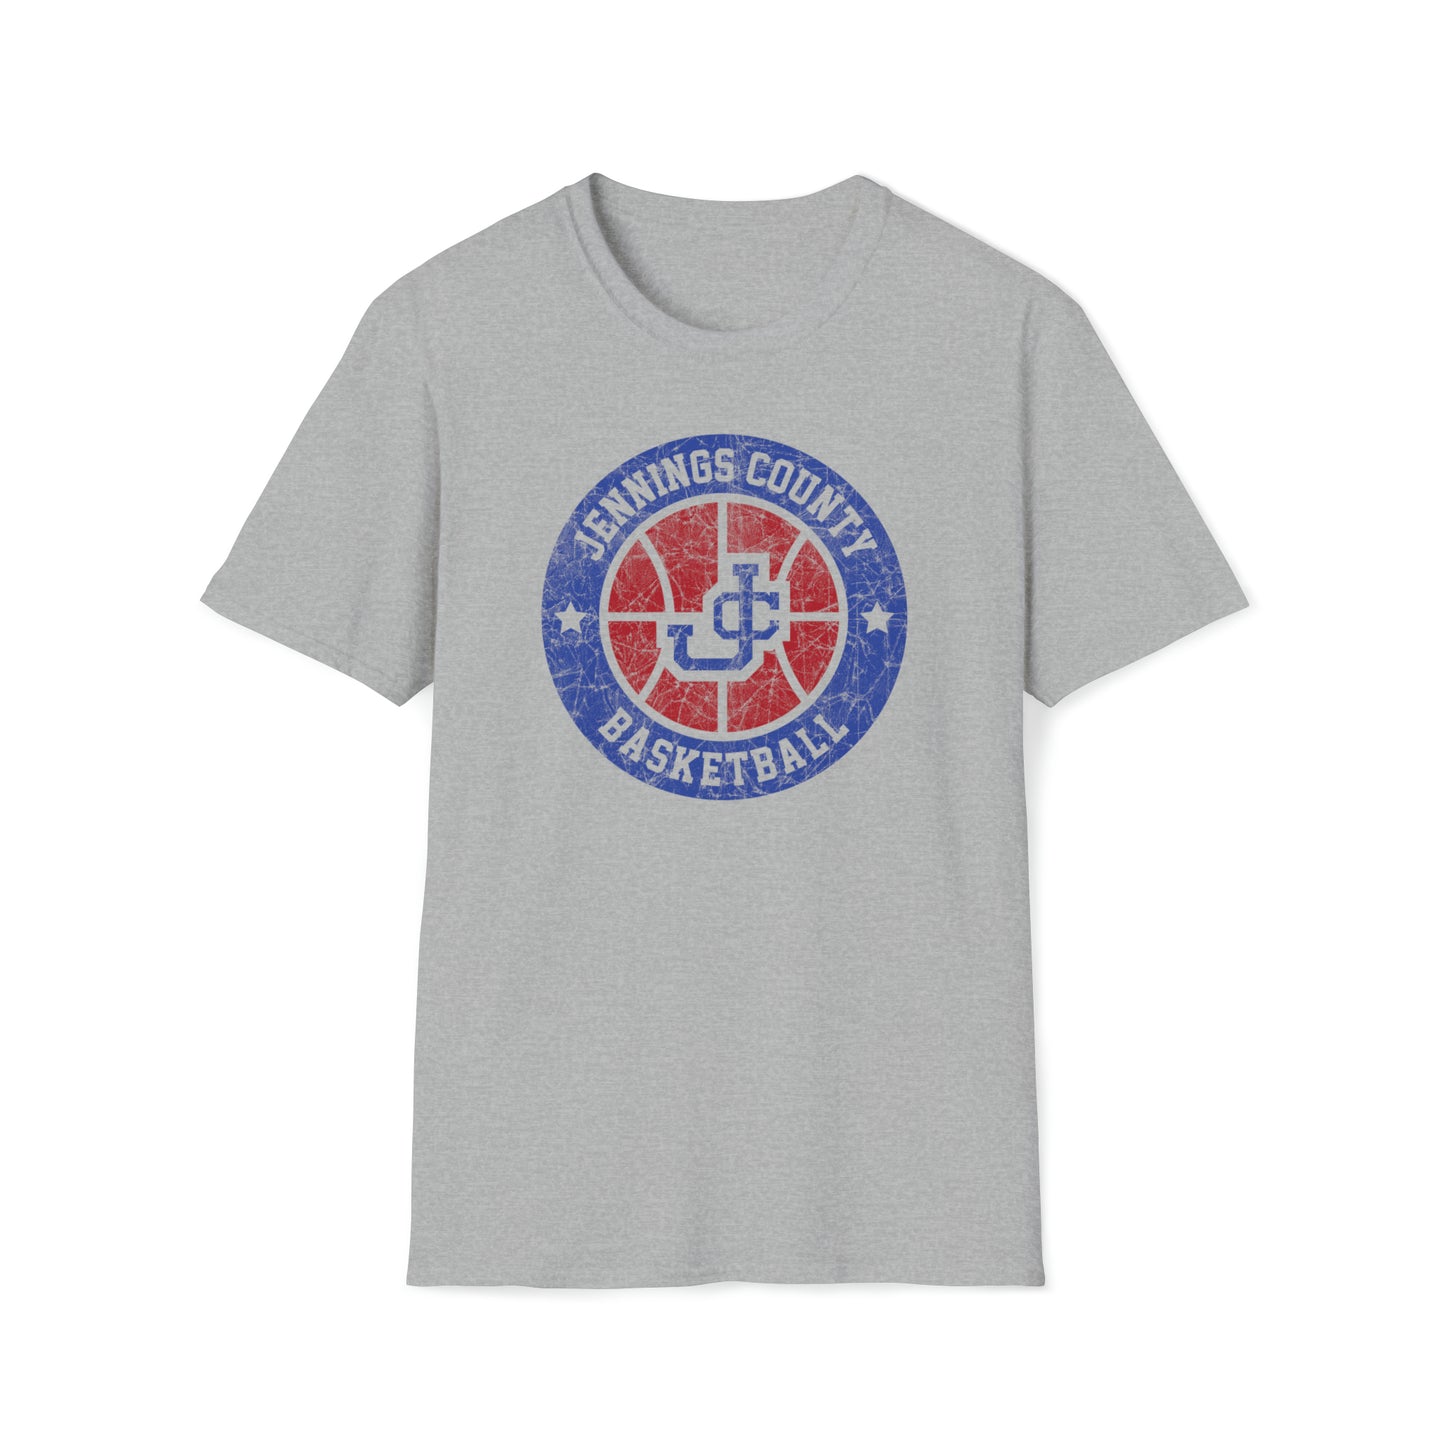 Vintage Jennings Co Basketball Unisex Softstyle T-Shirt